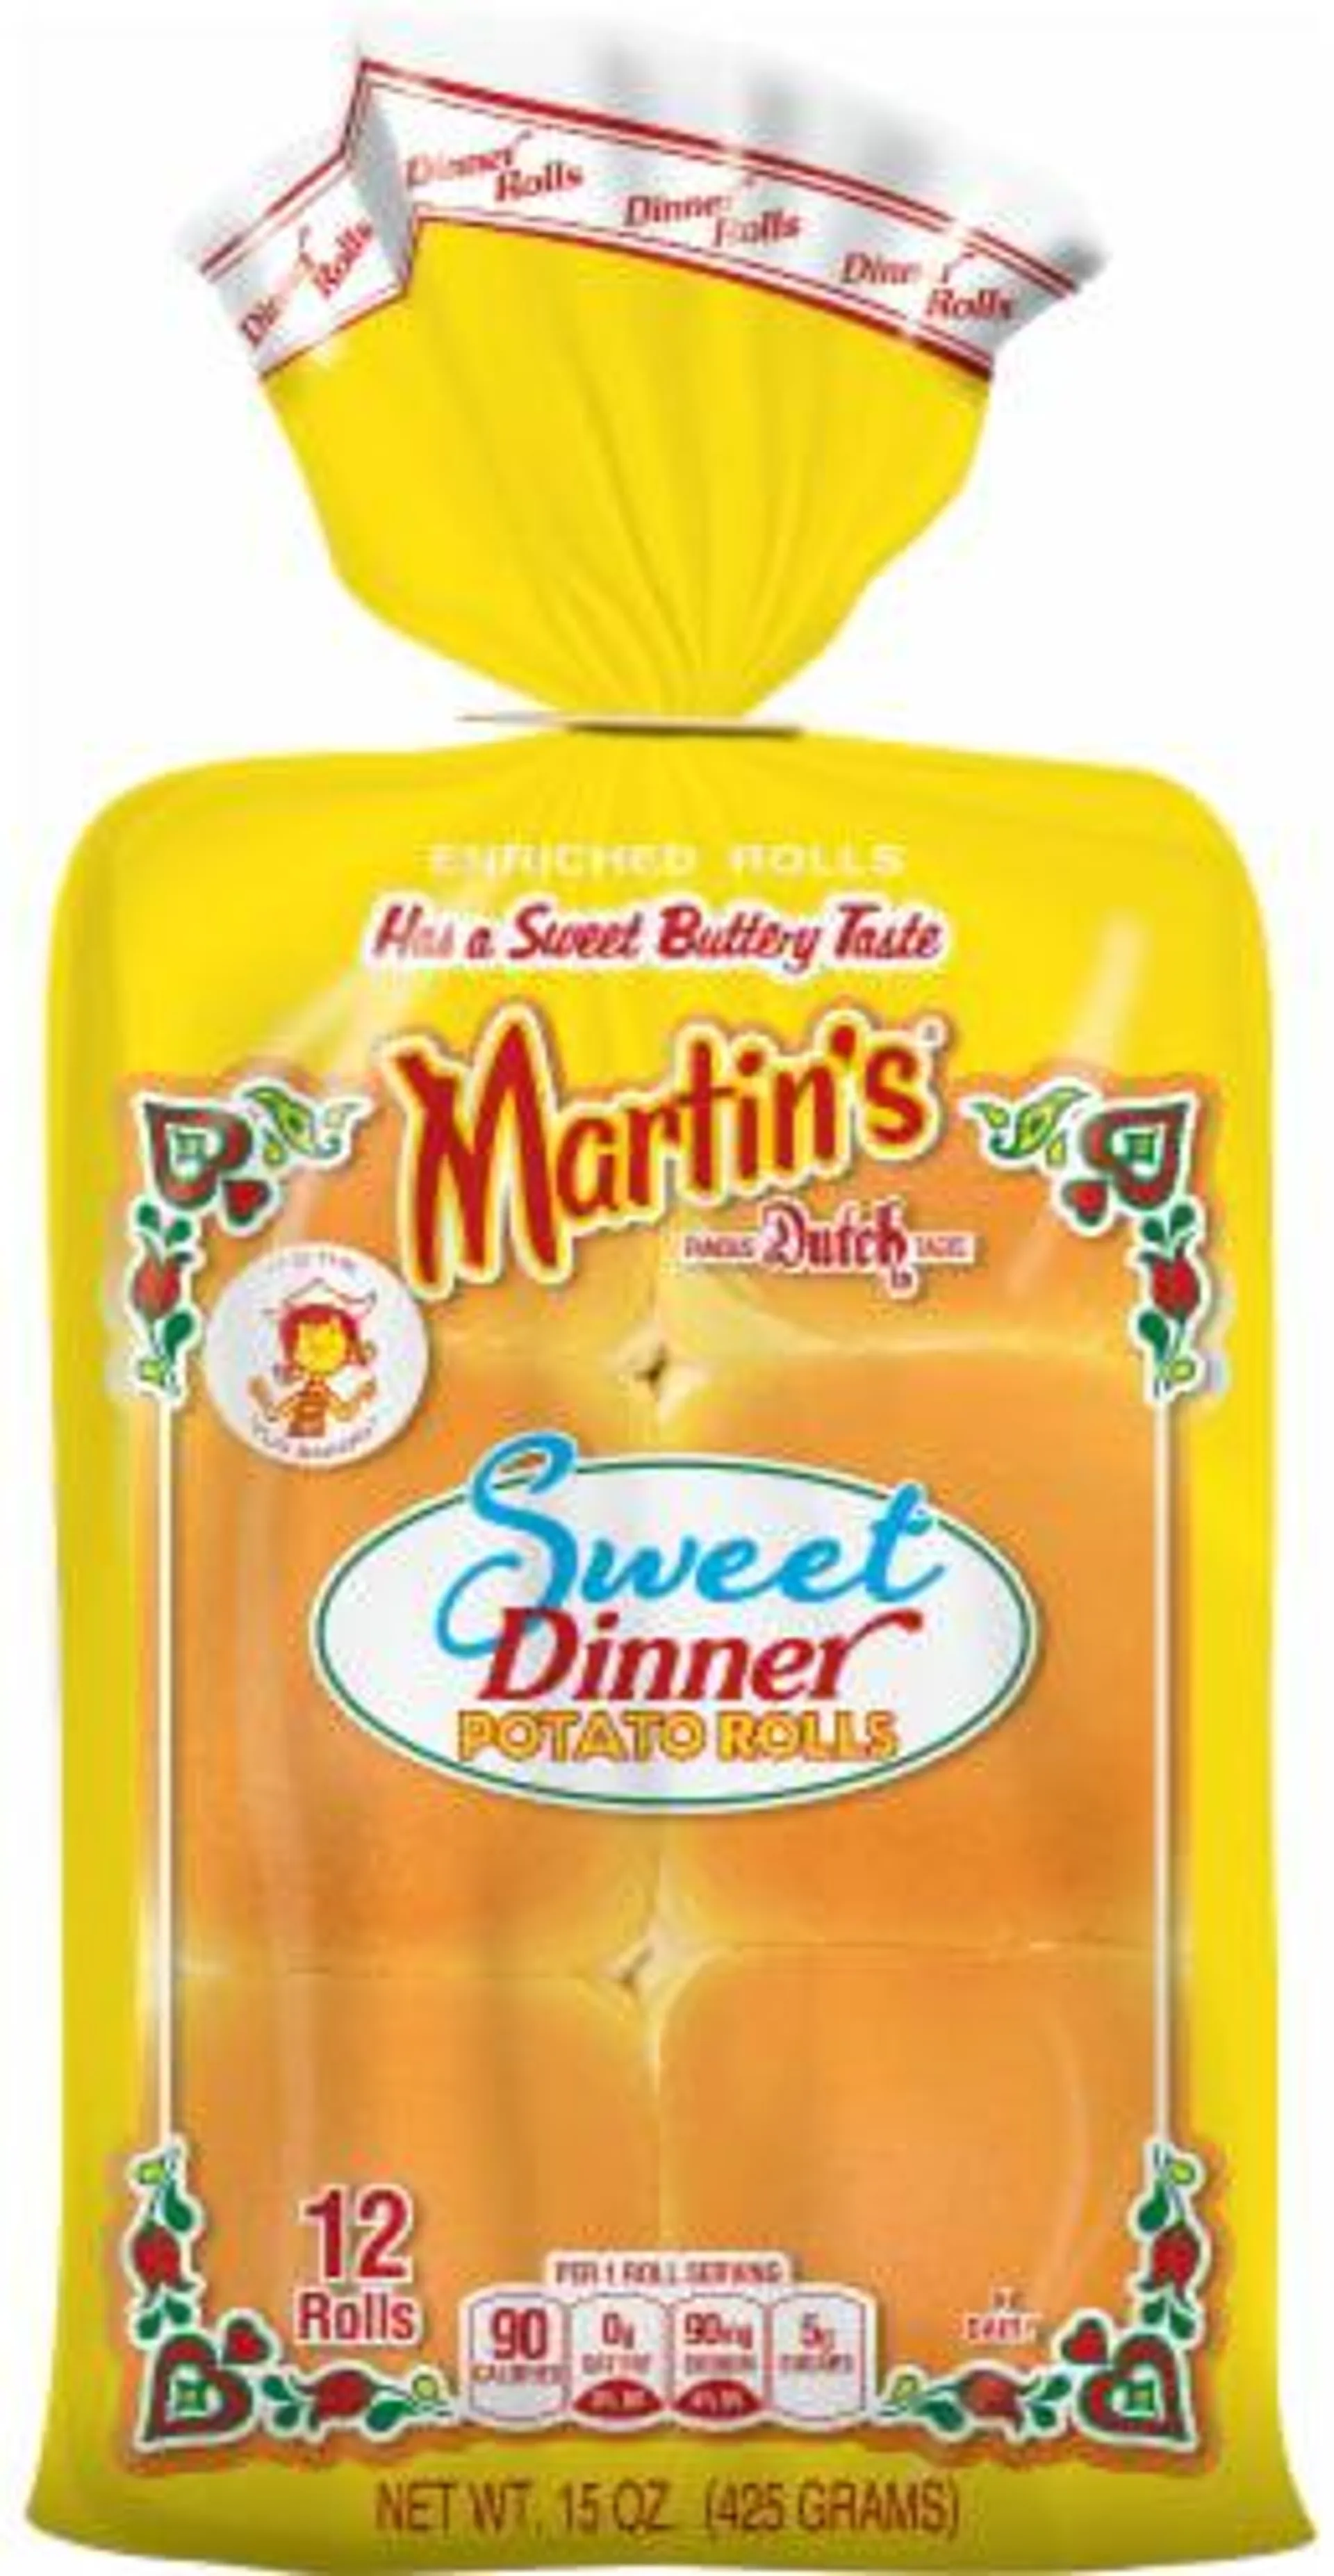 Martin's® Sweet Dinner Potato Rolls